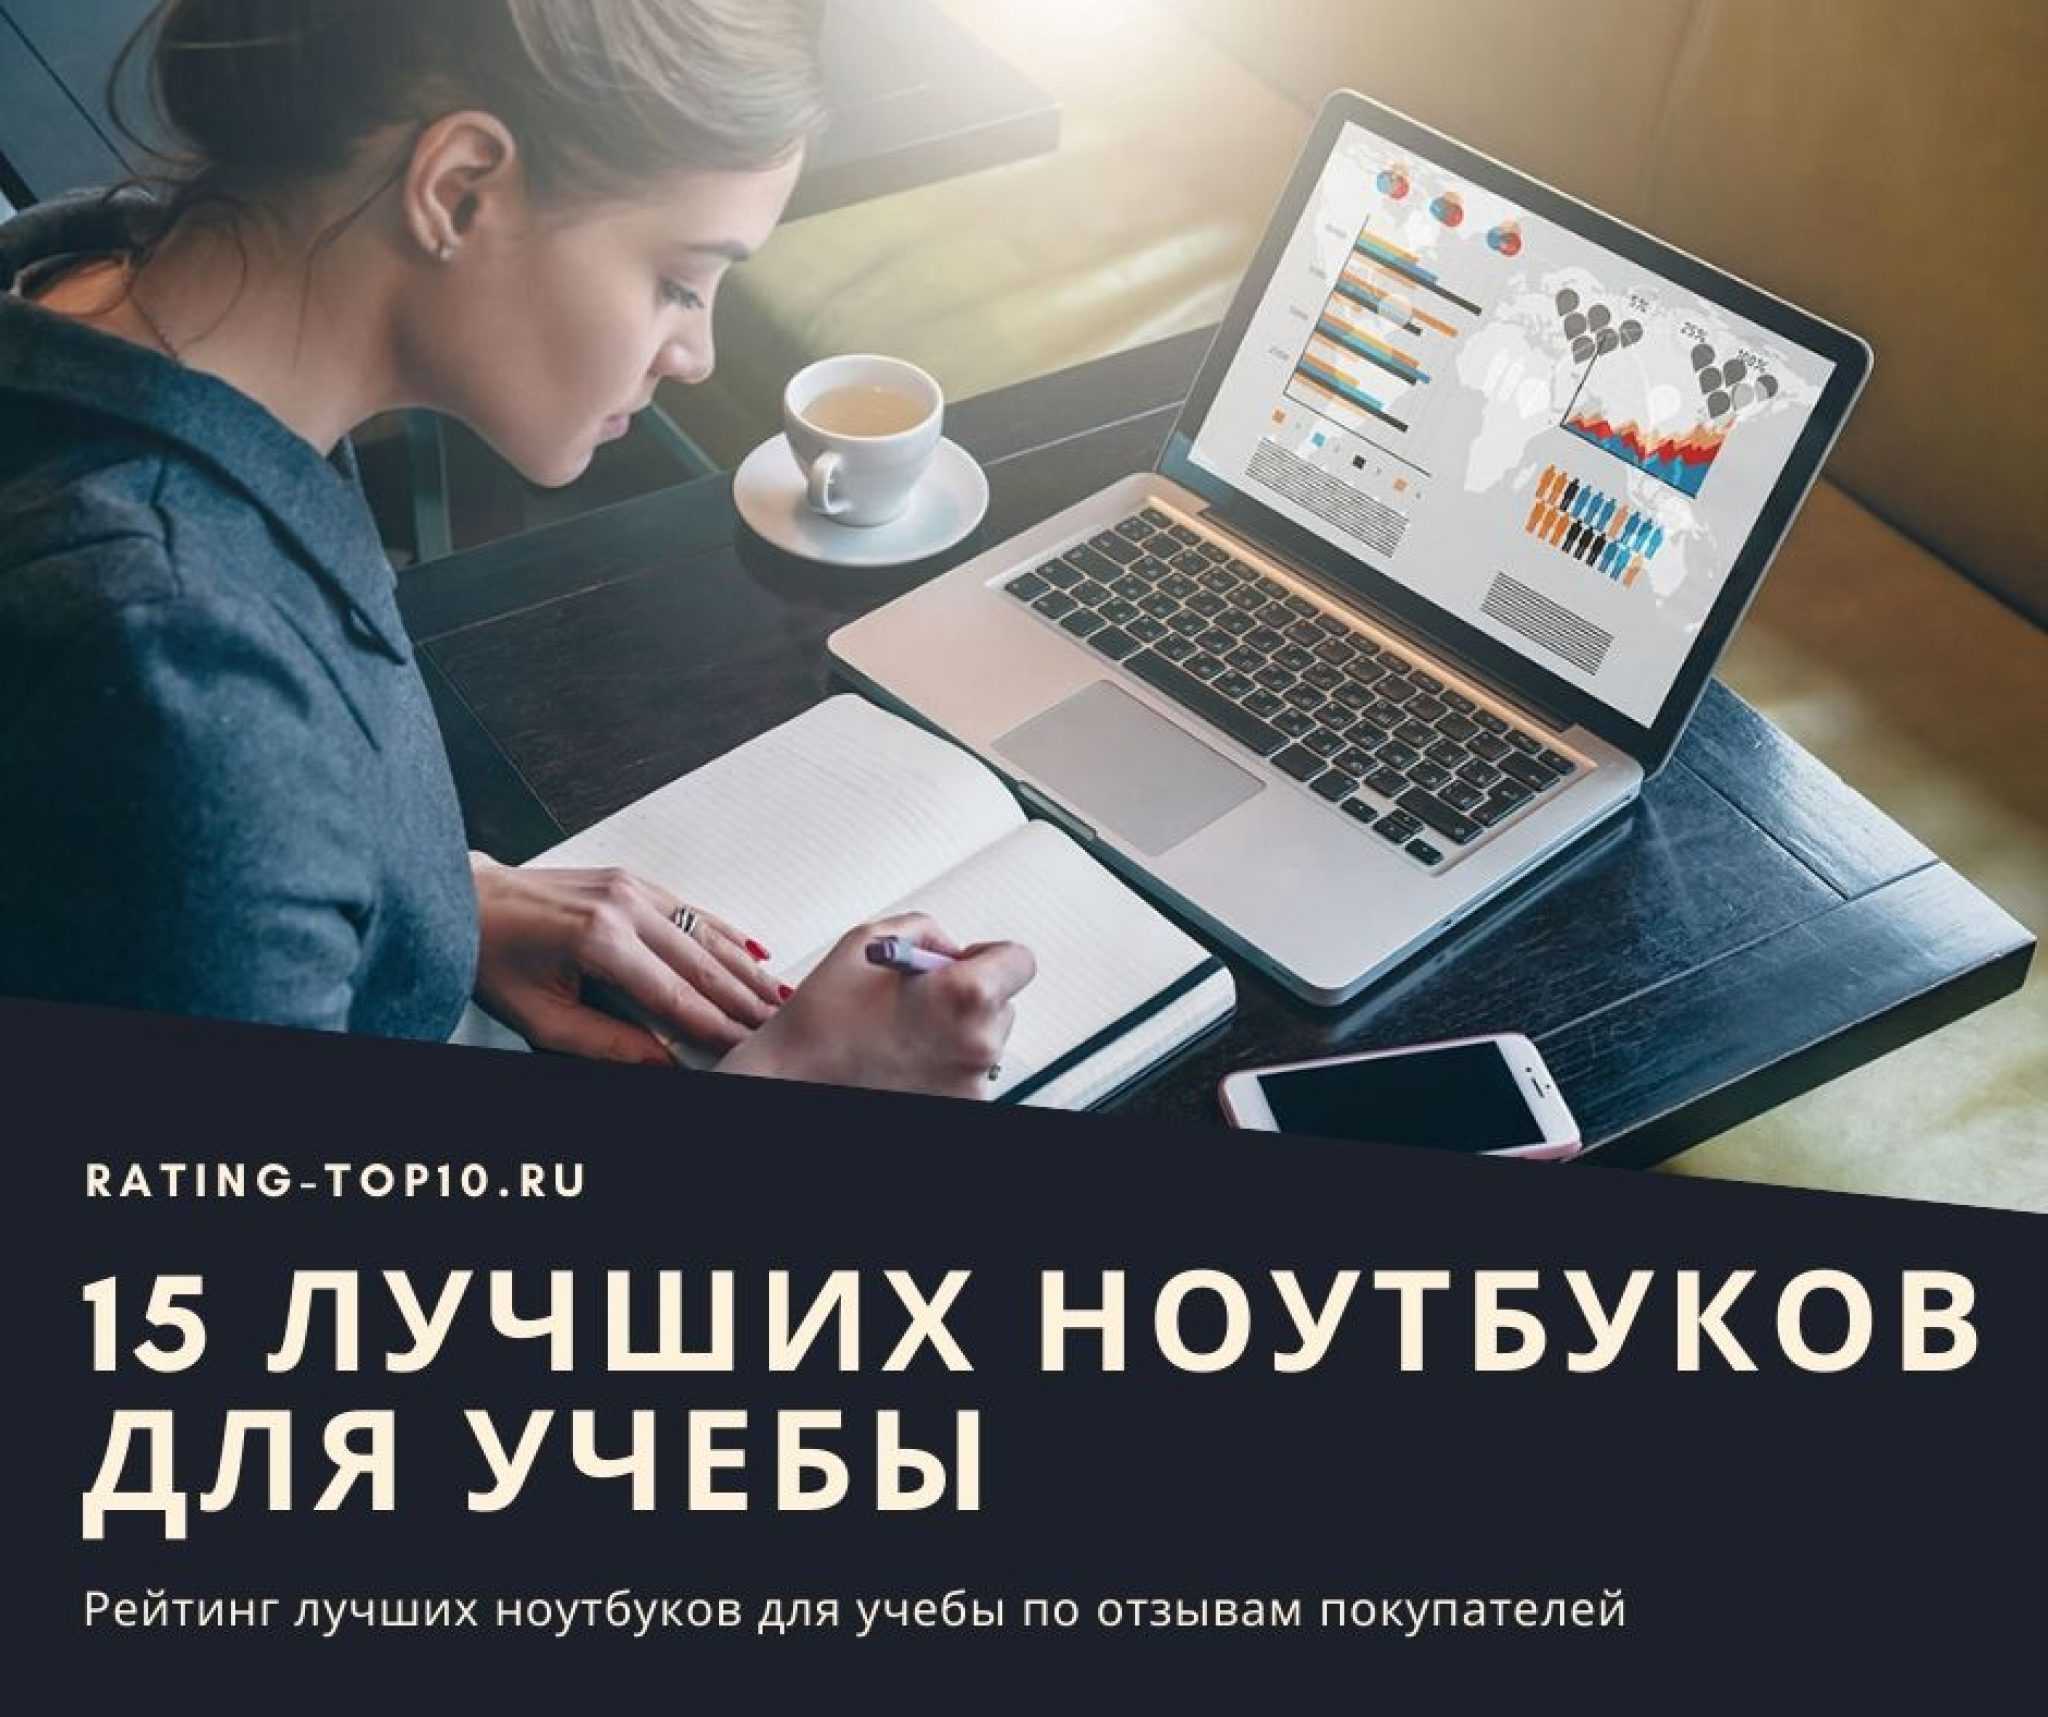 10 лучших ноутбуков до 20000 рублей - рейтинг 2021